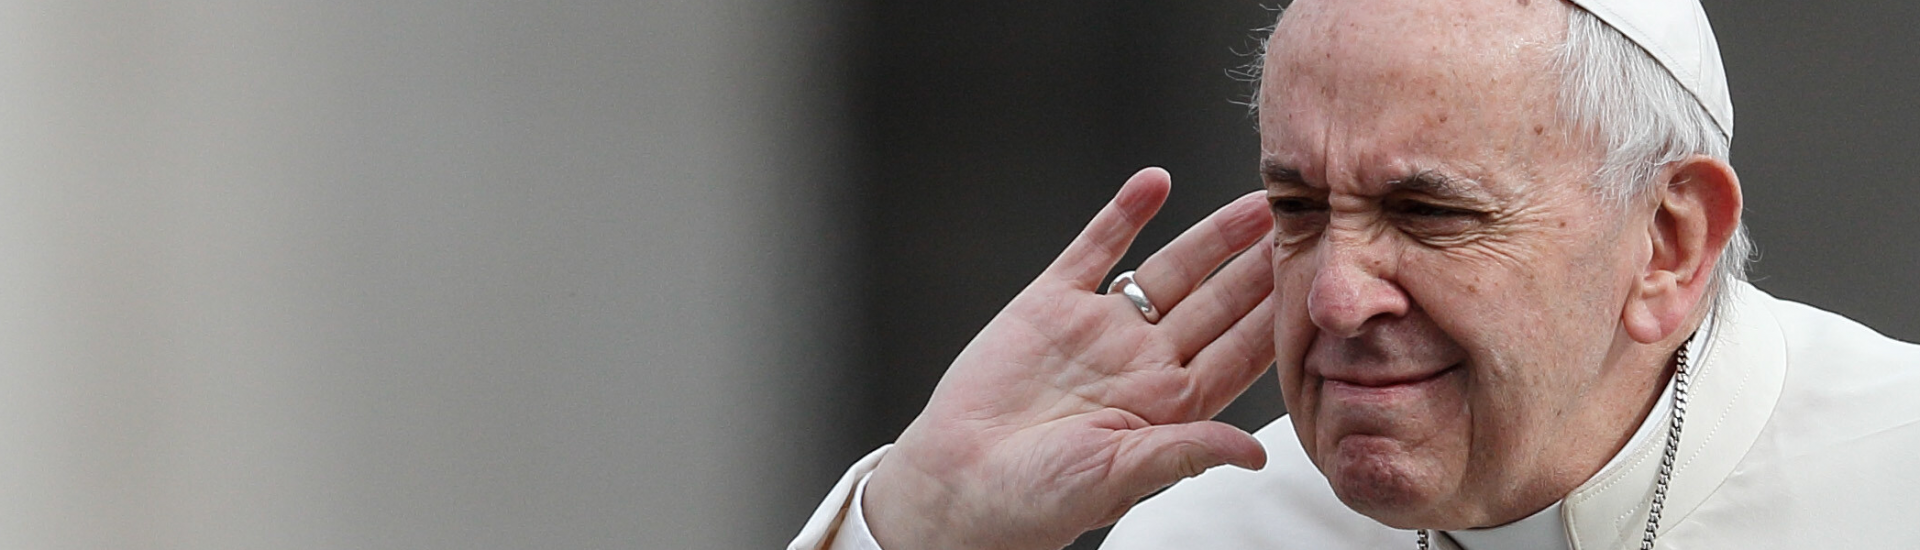 Der Papst hält die Hand ans Ohr und macht eine Geste des Hörens